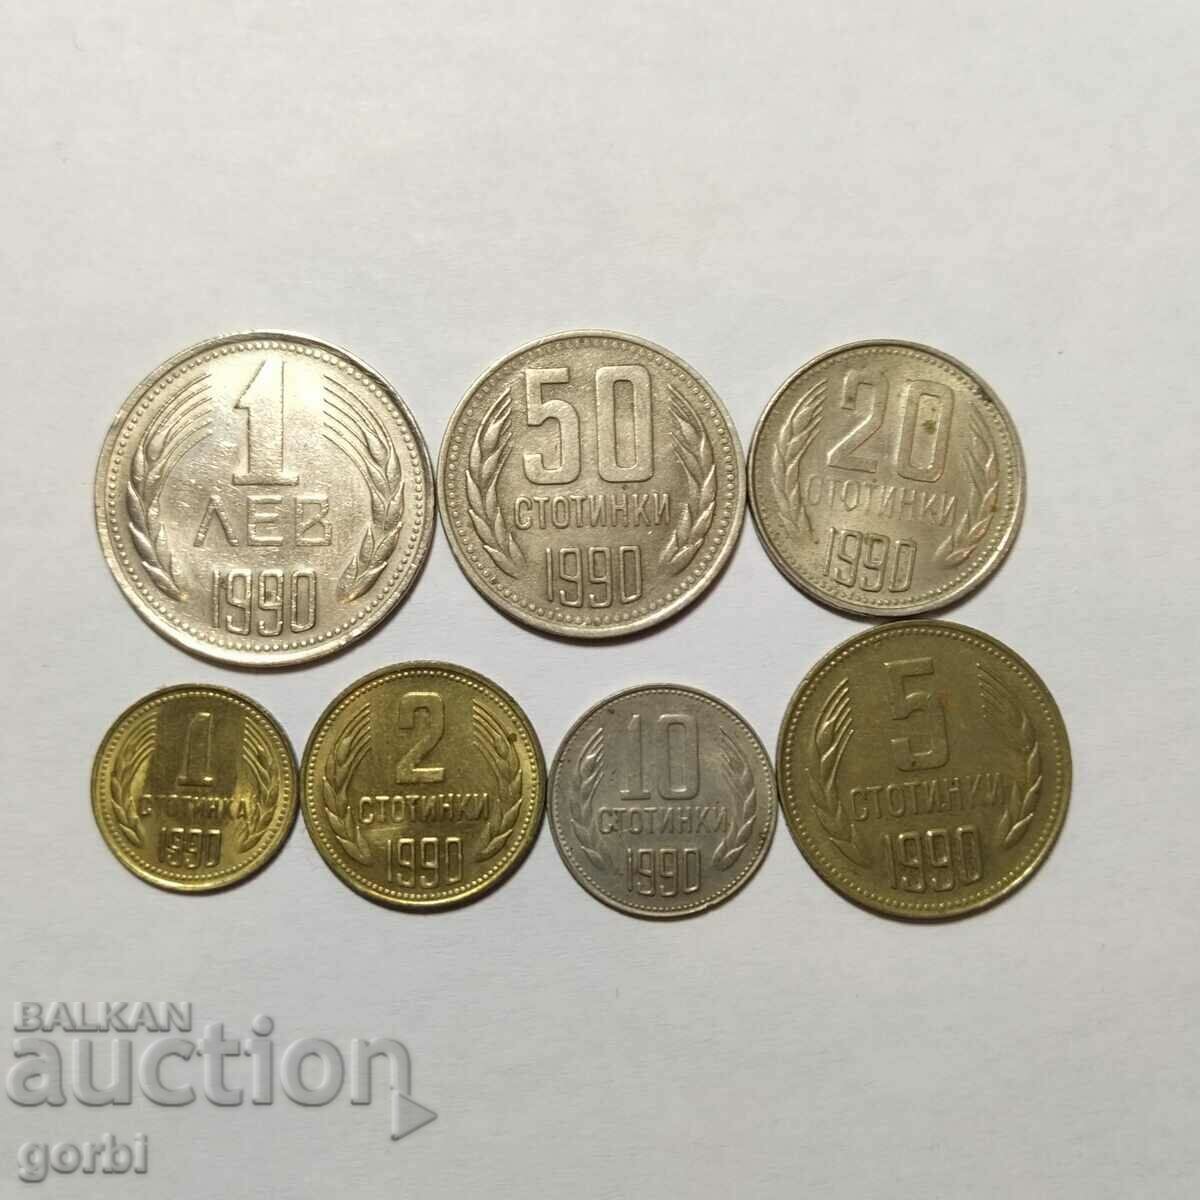 1990 Lot de monede